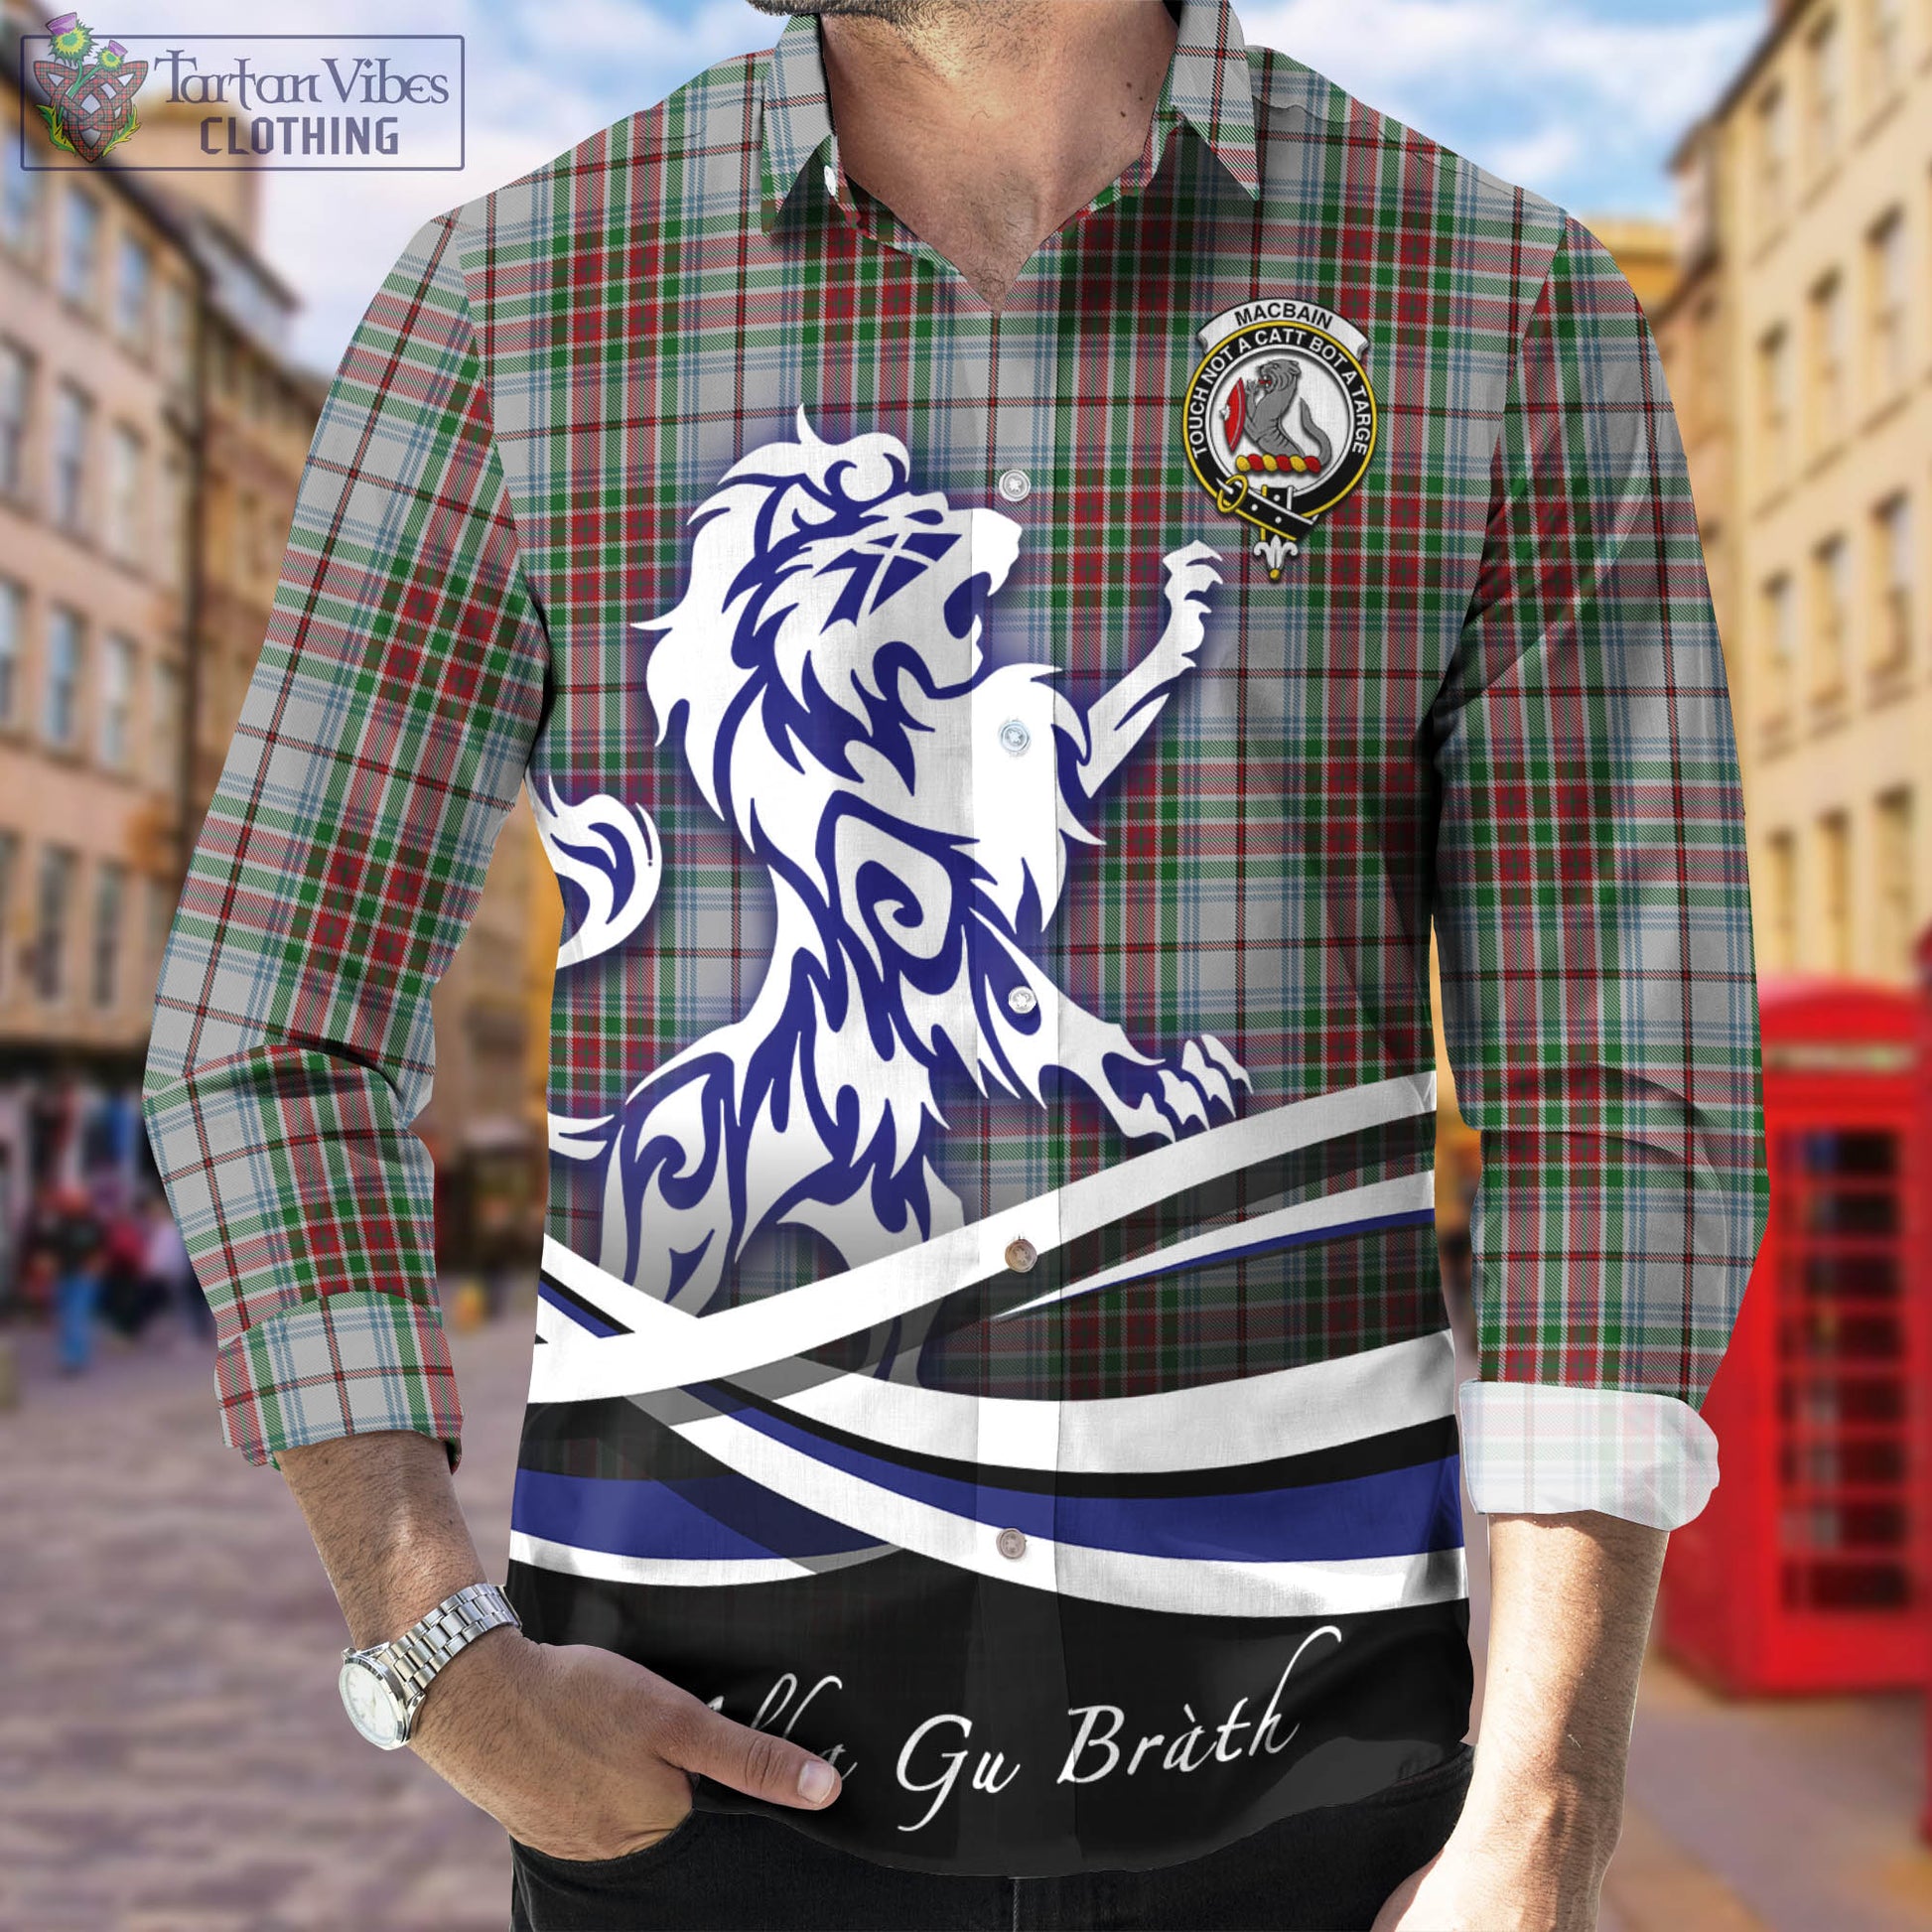 macbain-dress-tartan-long-sleeve-button-up-shirt-with-alba-gu-brath-regal-lion-emblem